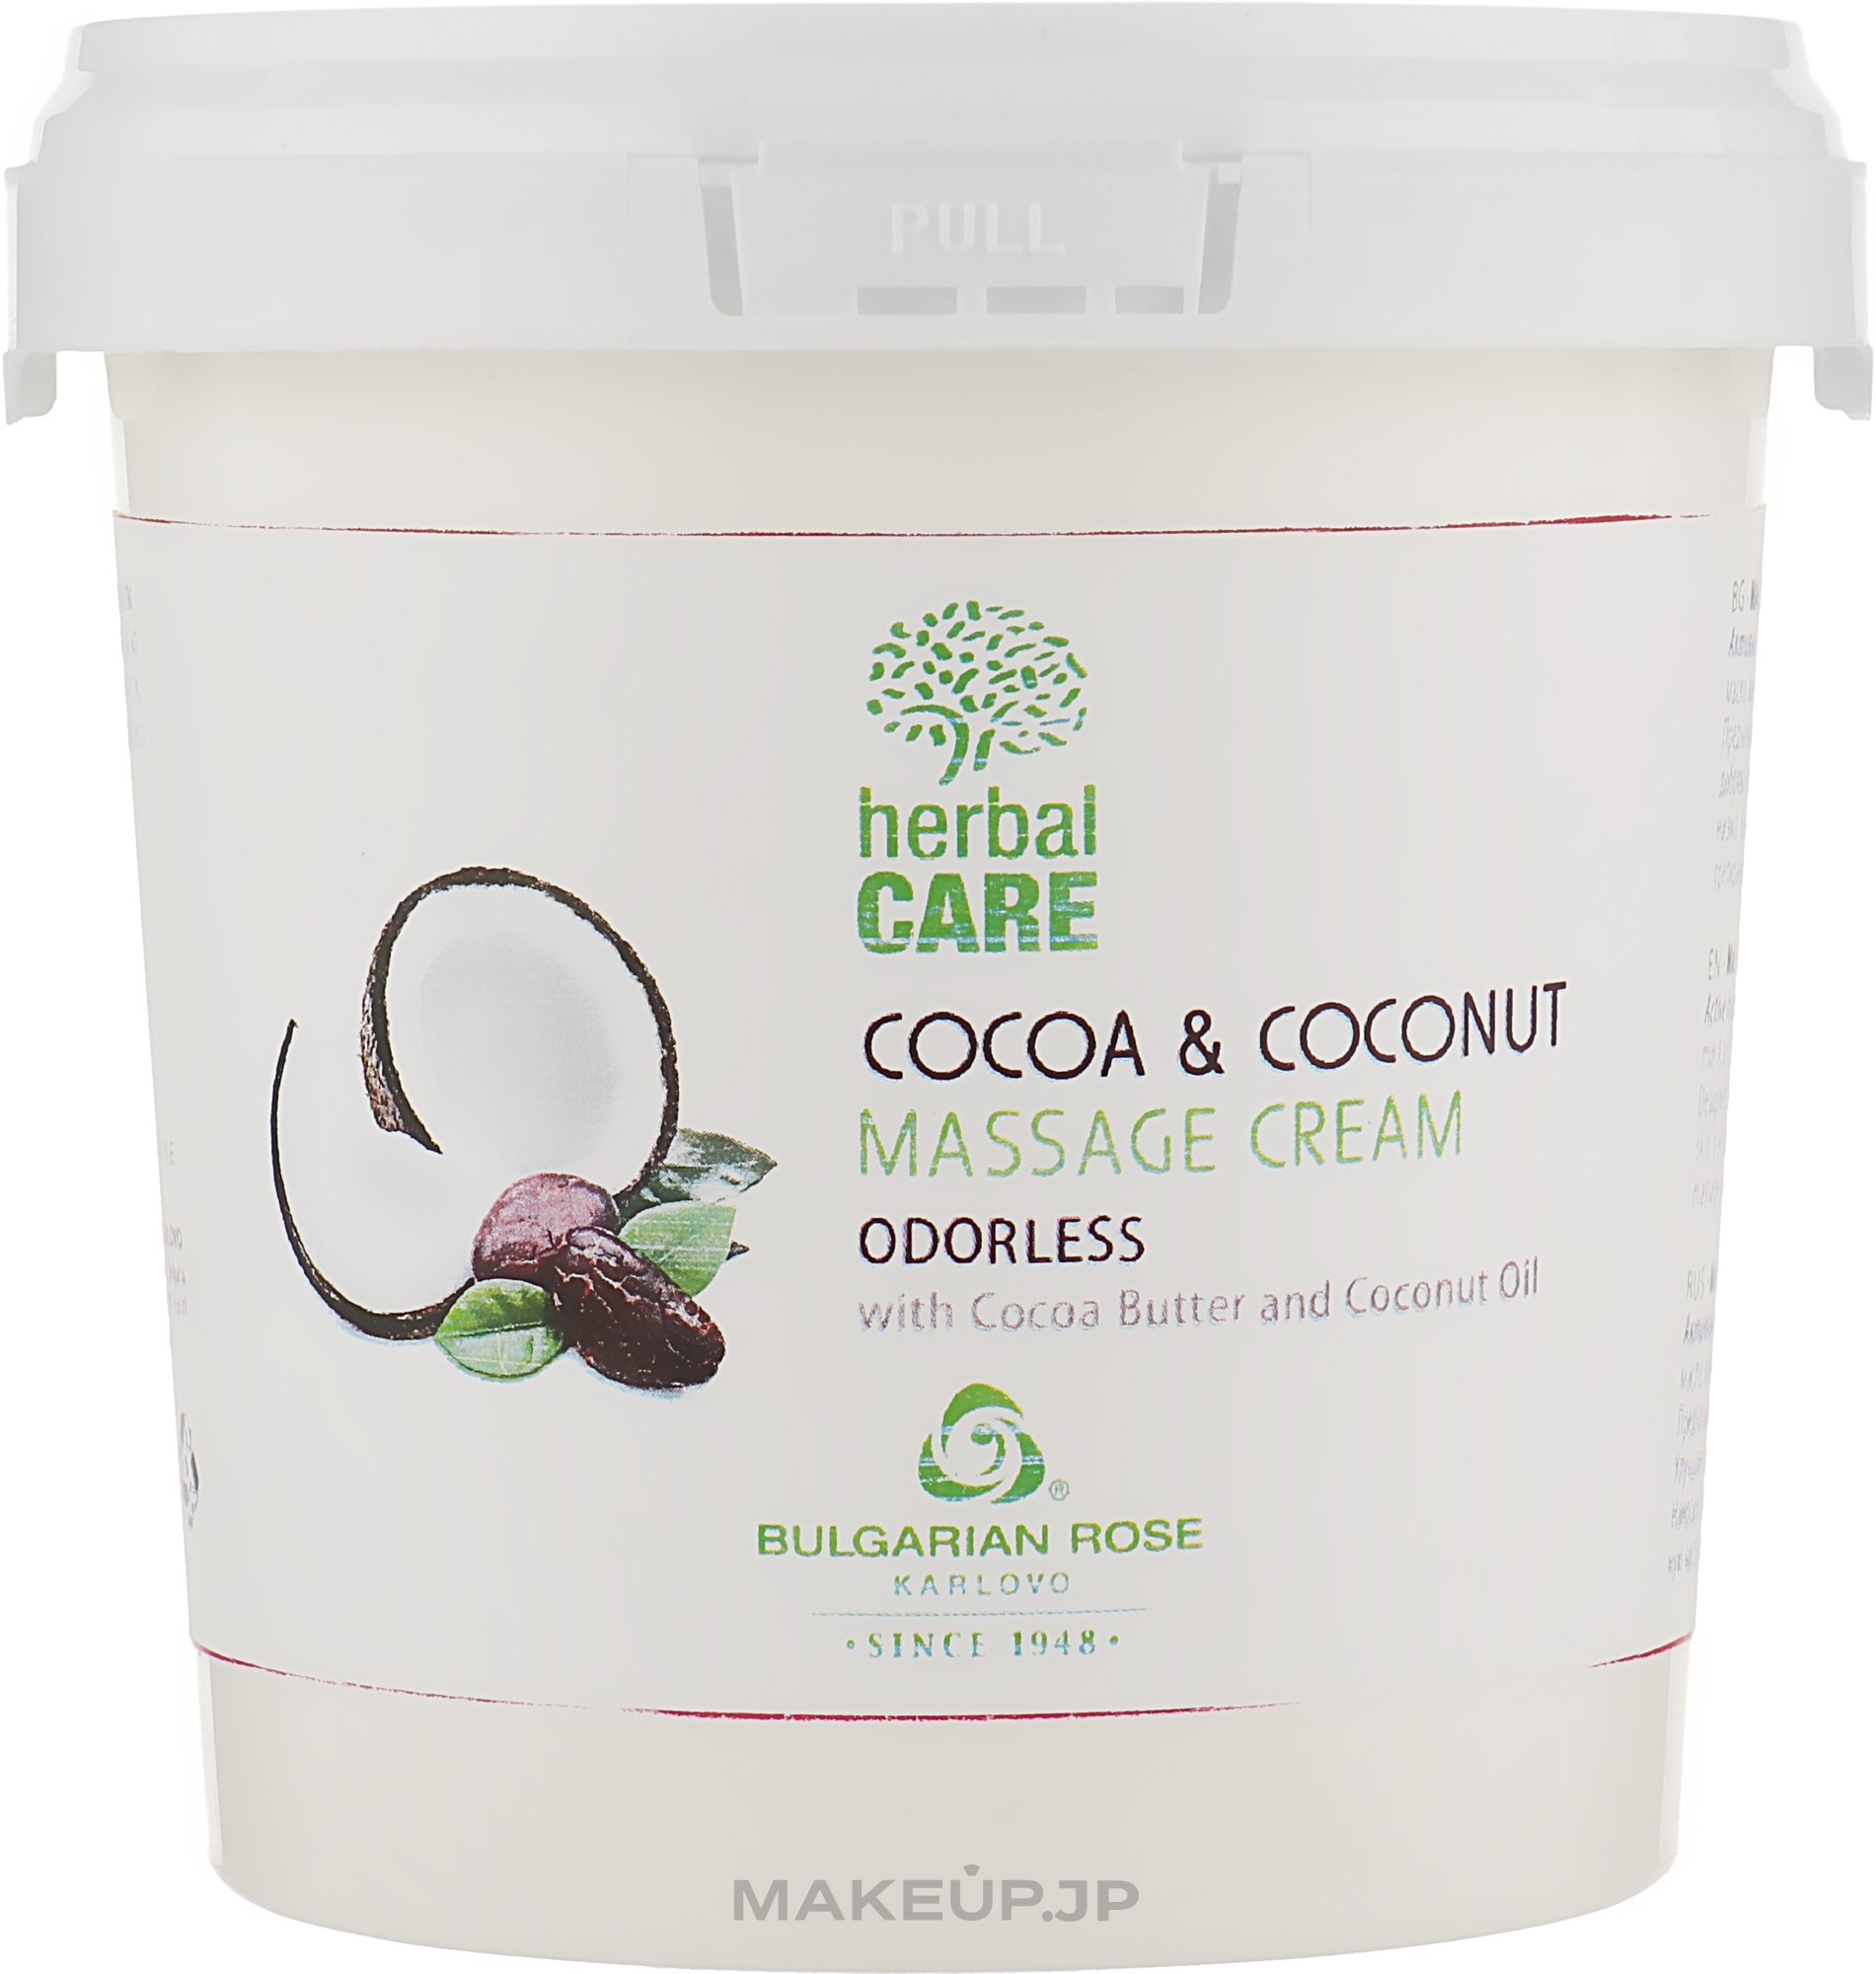 Cocoa & Coconut Massage Cream, odorless - Bulgarian Rose Herbal Care Cocoa & Coconut Massage Cream Odorless — photo 1000 ml